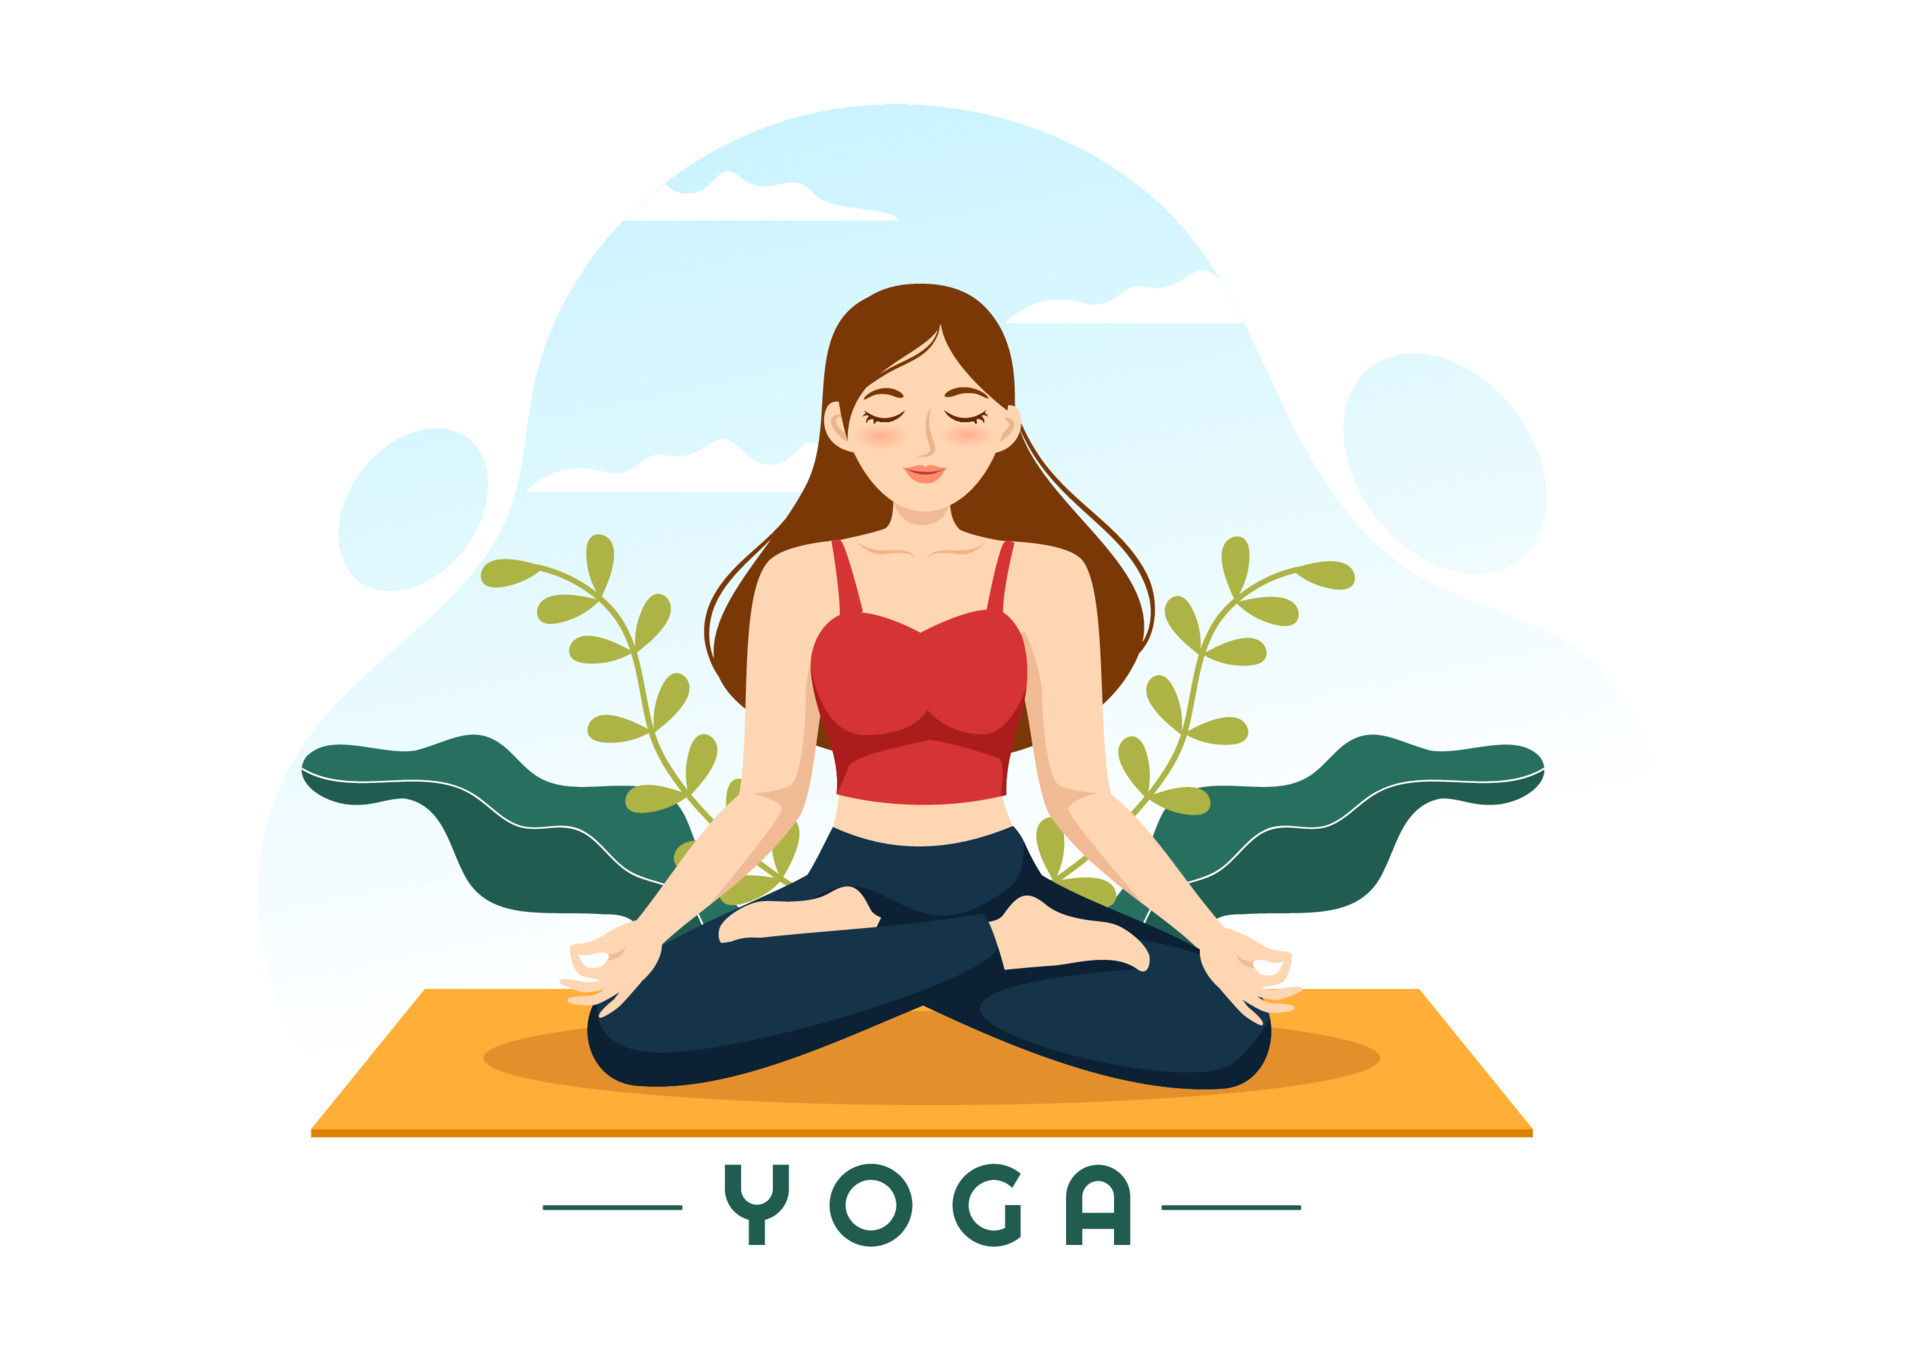 ilustração de práticas de ioga e meditação com benefícios para a